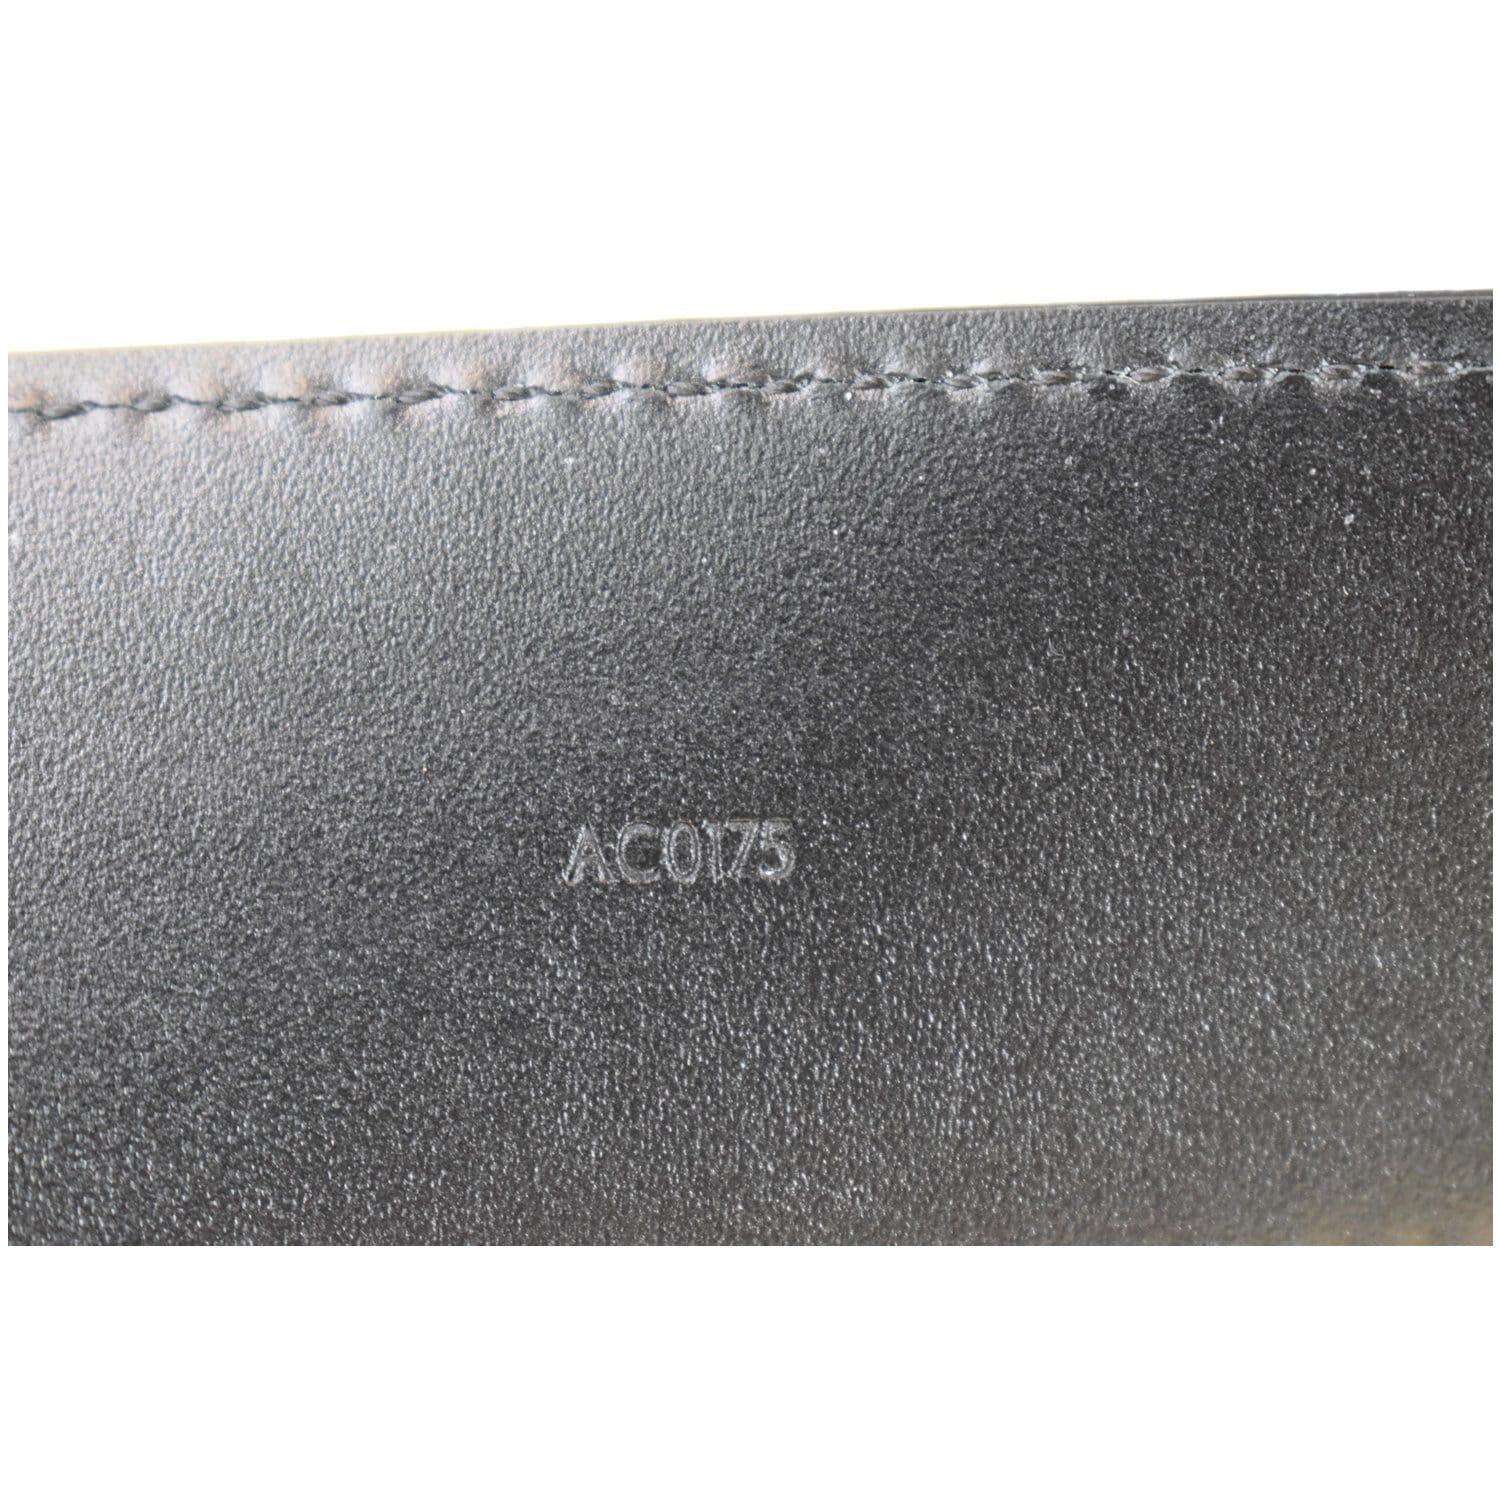 Louis Vuitton Belt LV Initiales Damier Graphite 40 MM Black/Grey